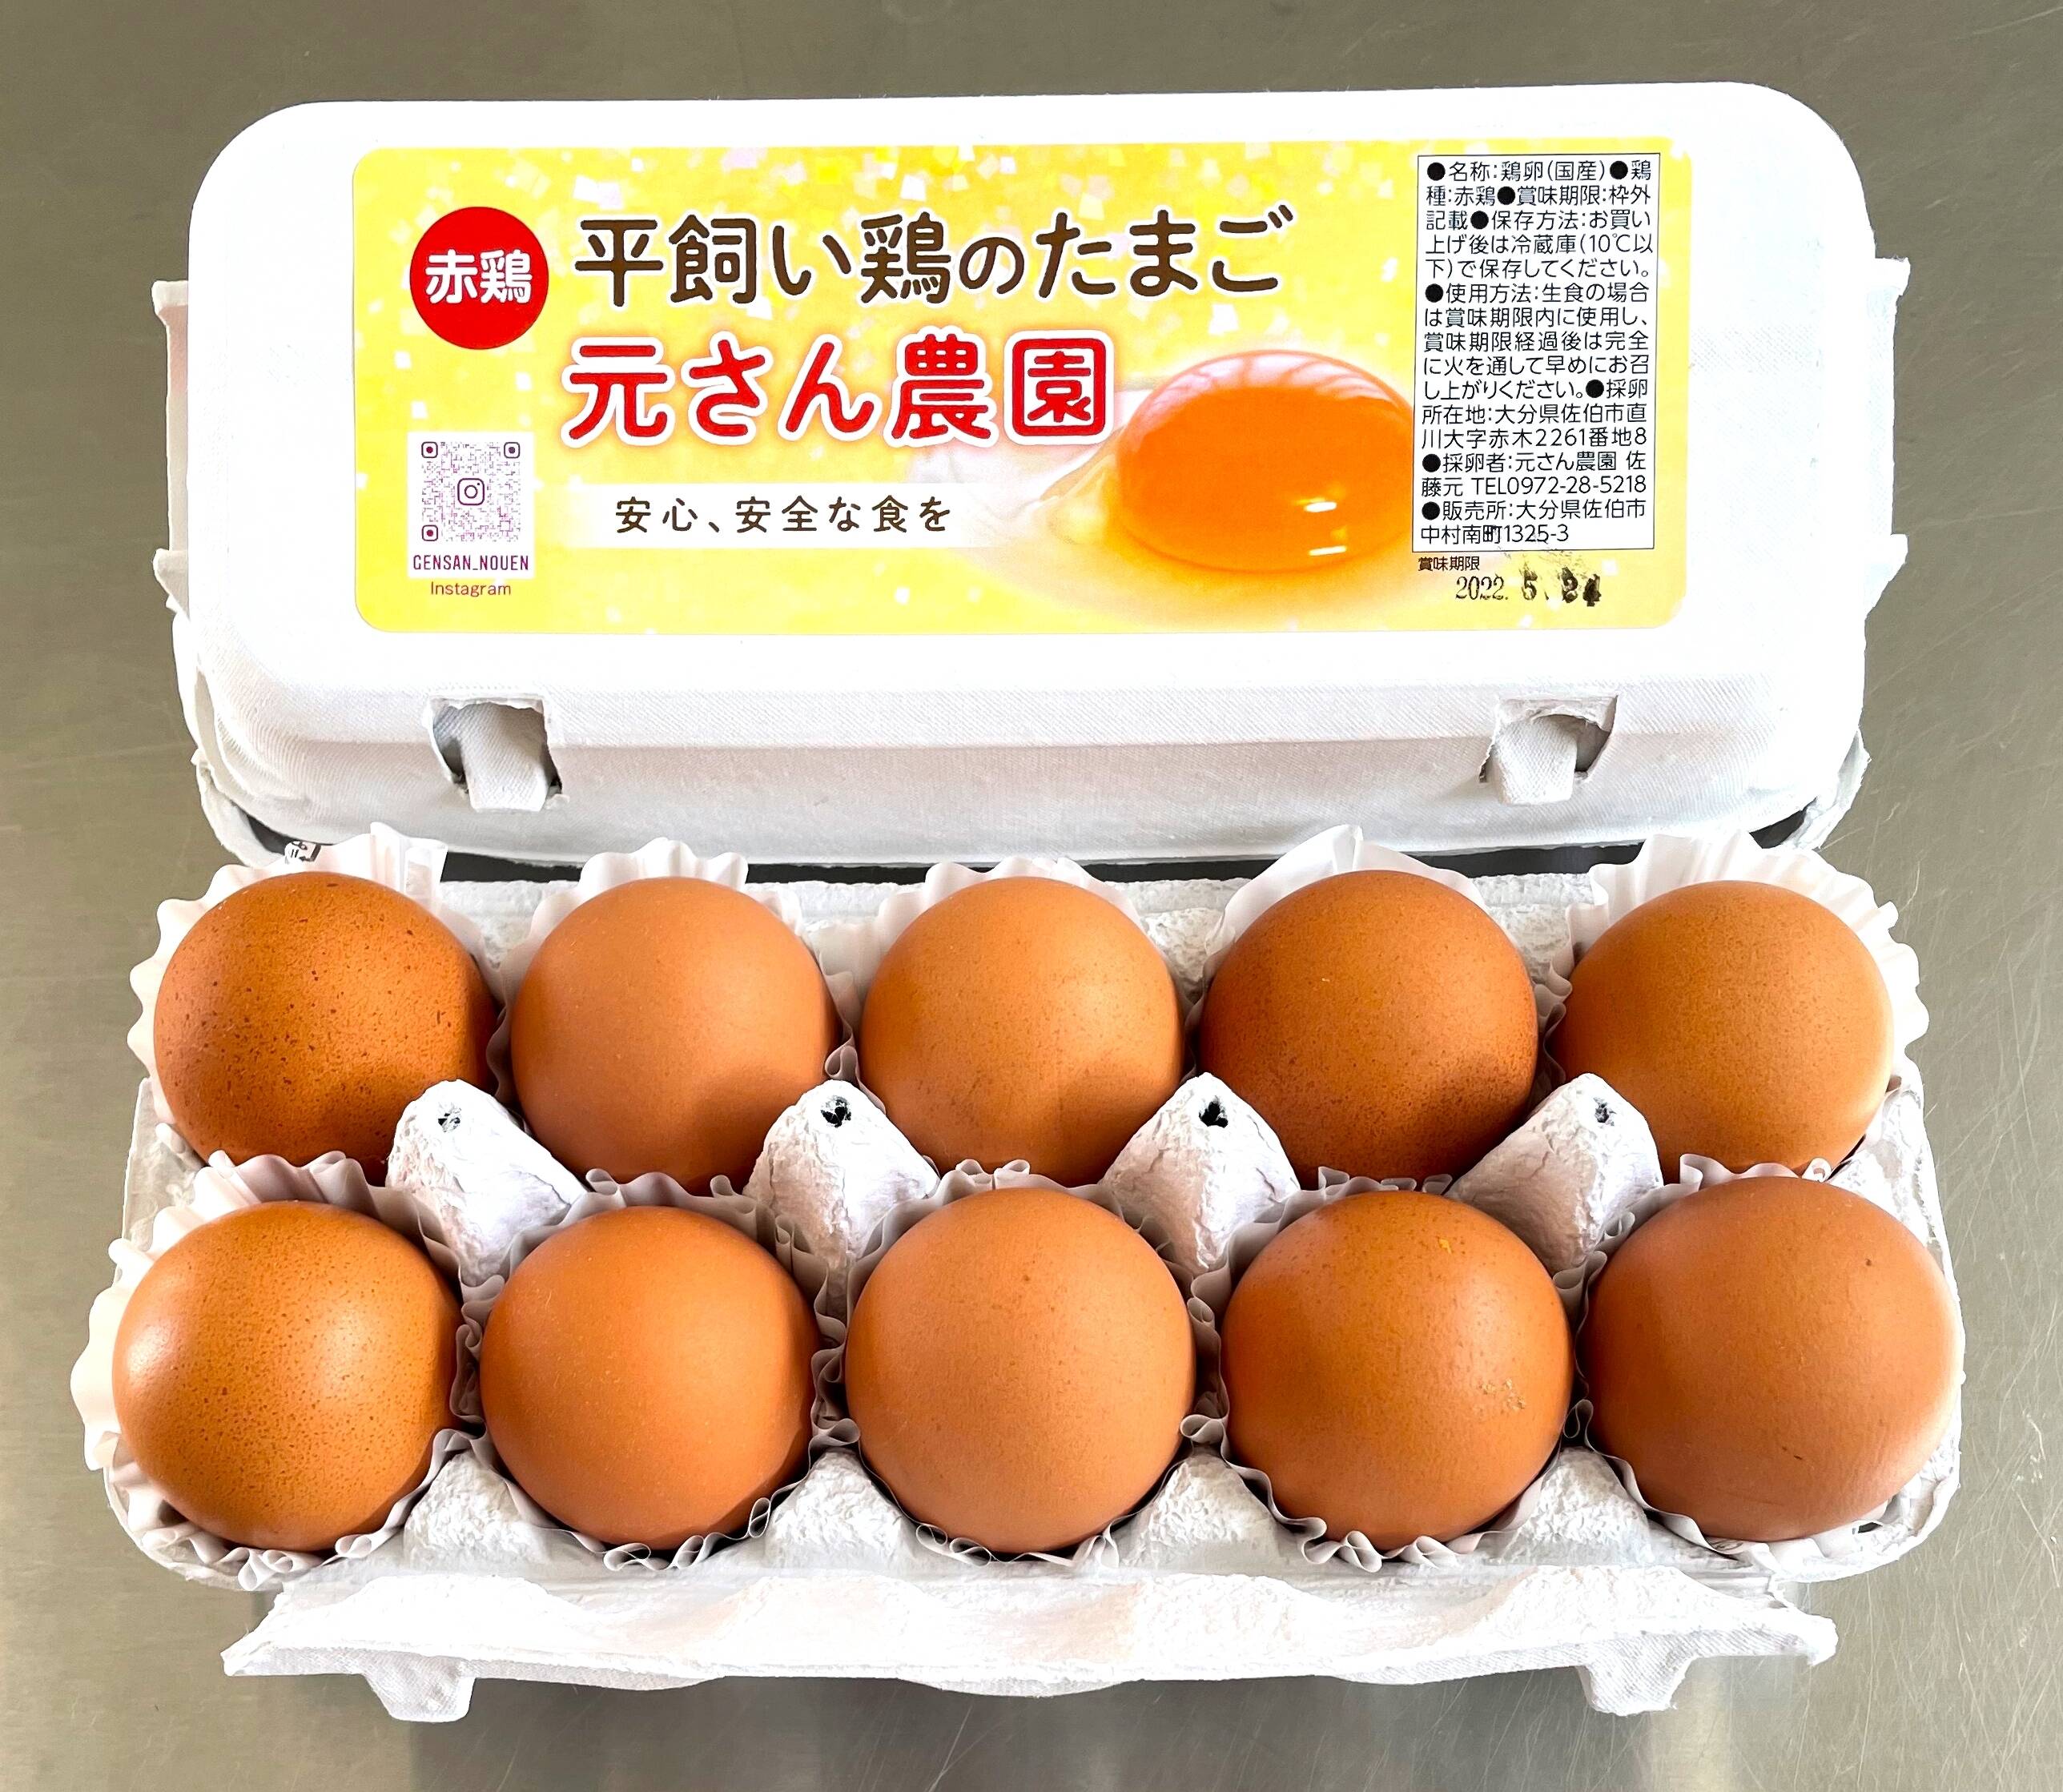 320個入り 宮下養鶏の朝採れ平飼い卵 - その他